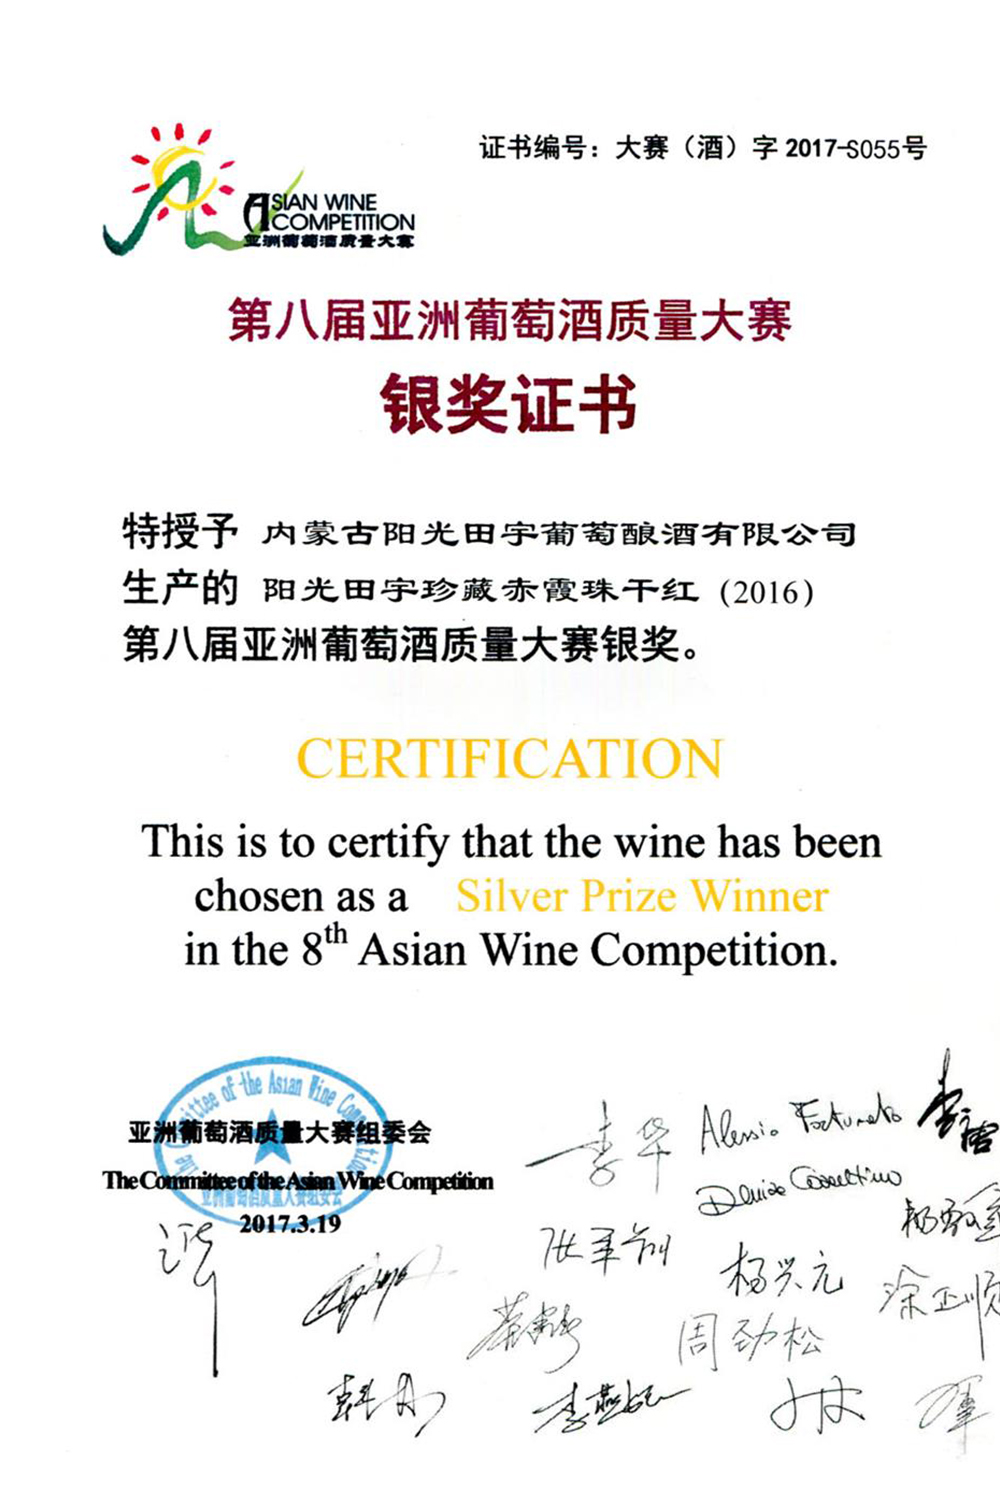 阳光田宇珍藏赤霞珠干红（2016）葡萄酒荣获第八届亚洲葡萄酒质量大赛银奖；